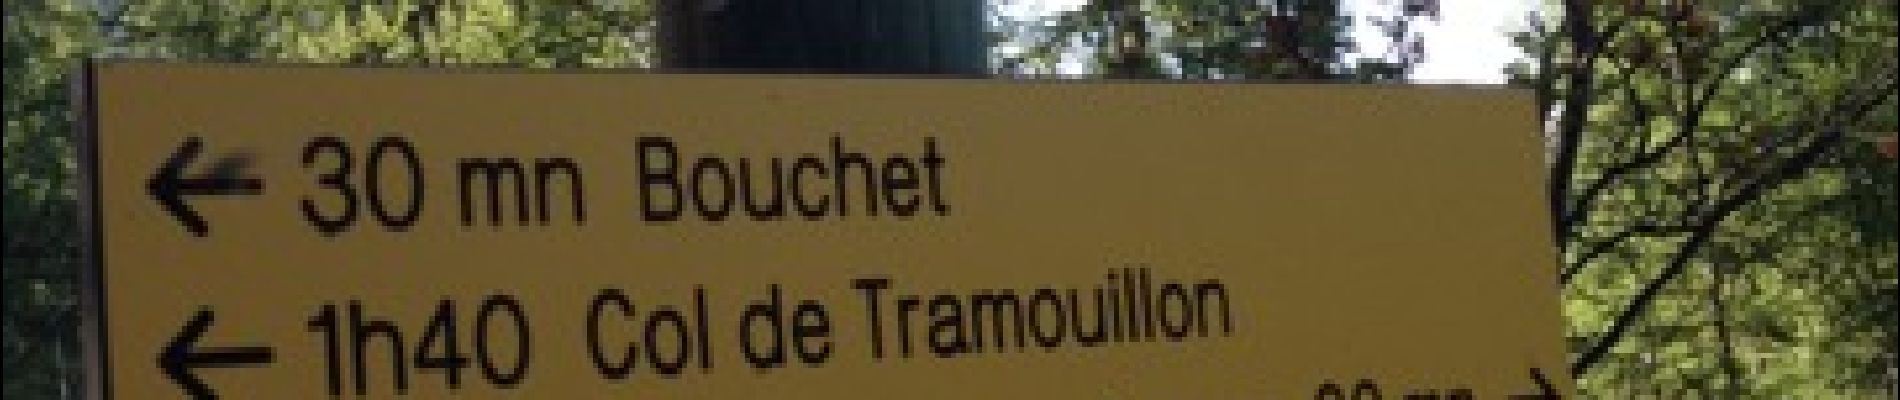 Trail Walking Champcella - Seyes - Col de Tramouillon - Photo